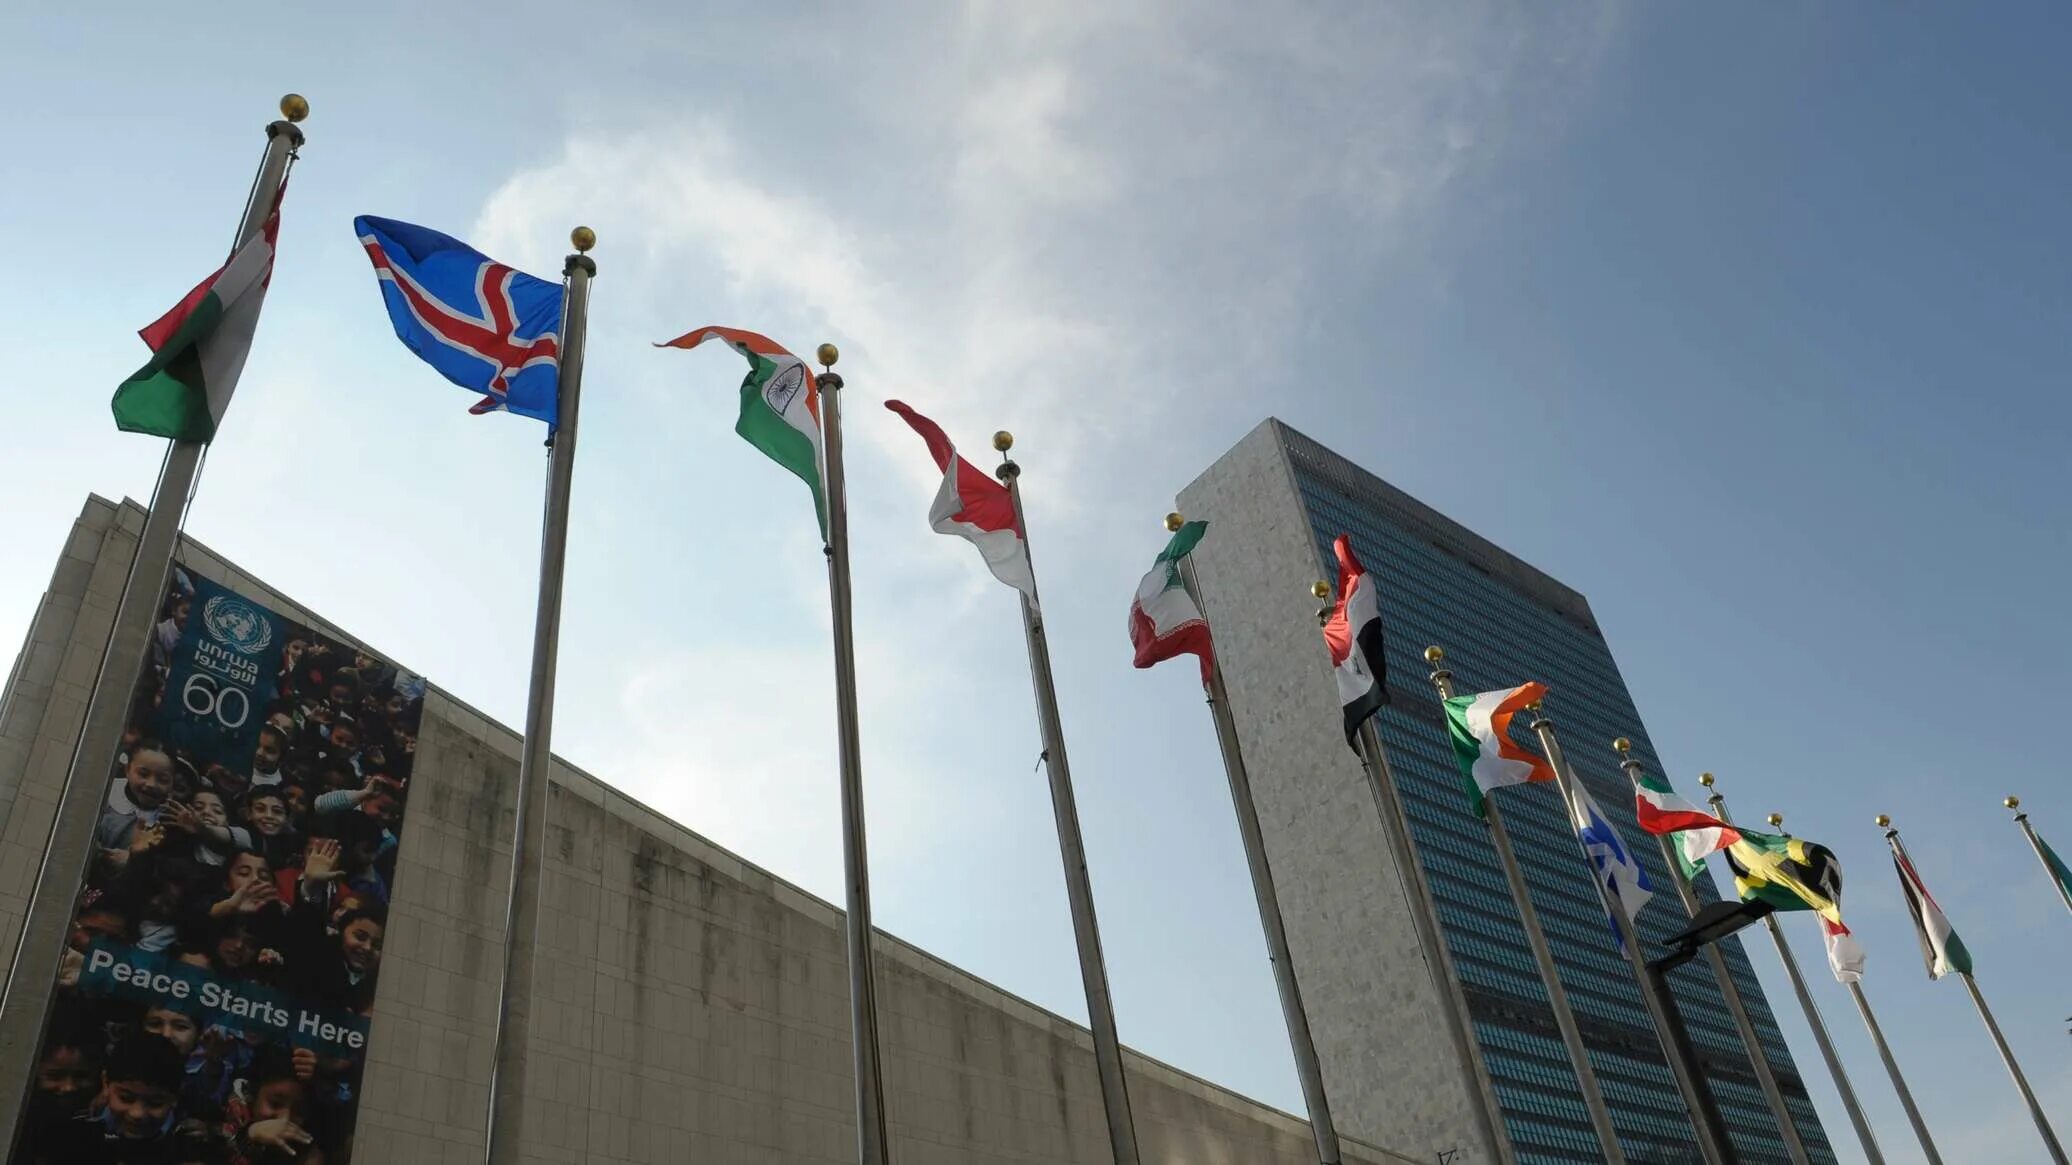 ООН В Нью Йорке. Здание ООН В Нью-Йорке. Здание ООН (организации Объединённых наций) в Нью-Йорке. Здание ООН Ташкент.